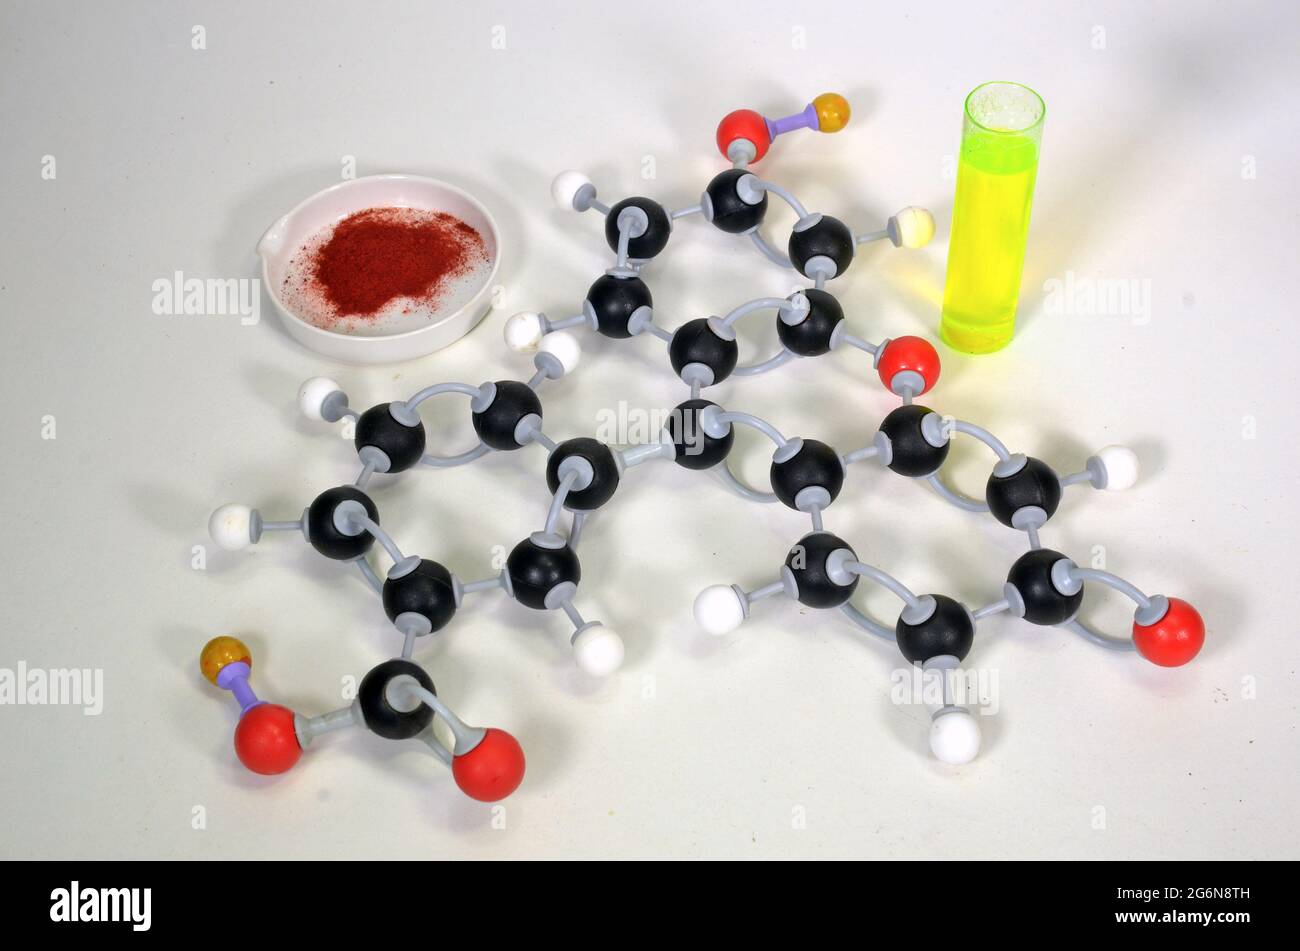 Modello molecolare di Uranina, questo pigmento è una polvere arancione ma diventa verde quando dissolto in acqua. Il bianco è idrogeno, il nero è carbonio, il rosso è ossigeno Foto Stock